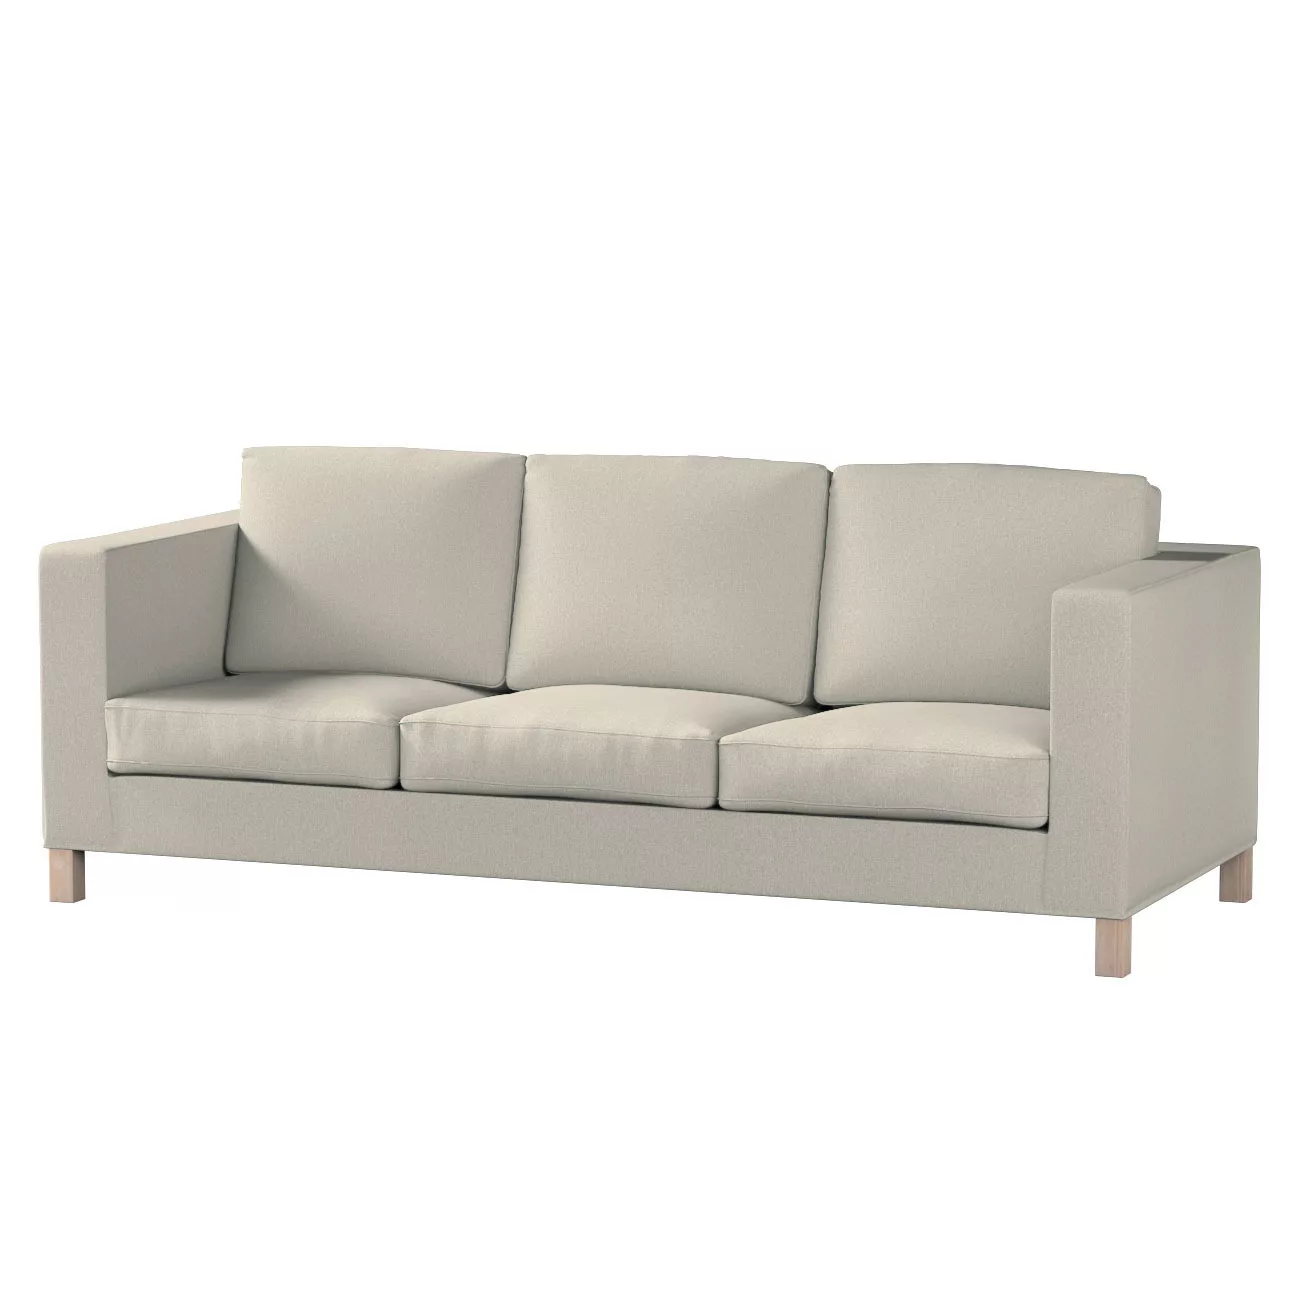 Bezug für Karlanda 3-Sitzer Sofa nicht ausklappbar, kurz, beige, Bezug für günstig online kaufen